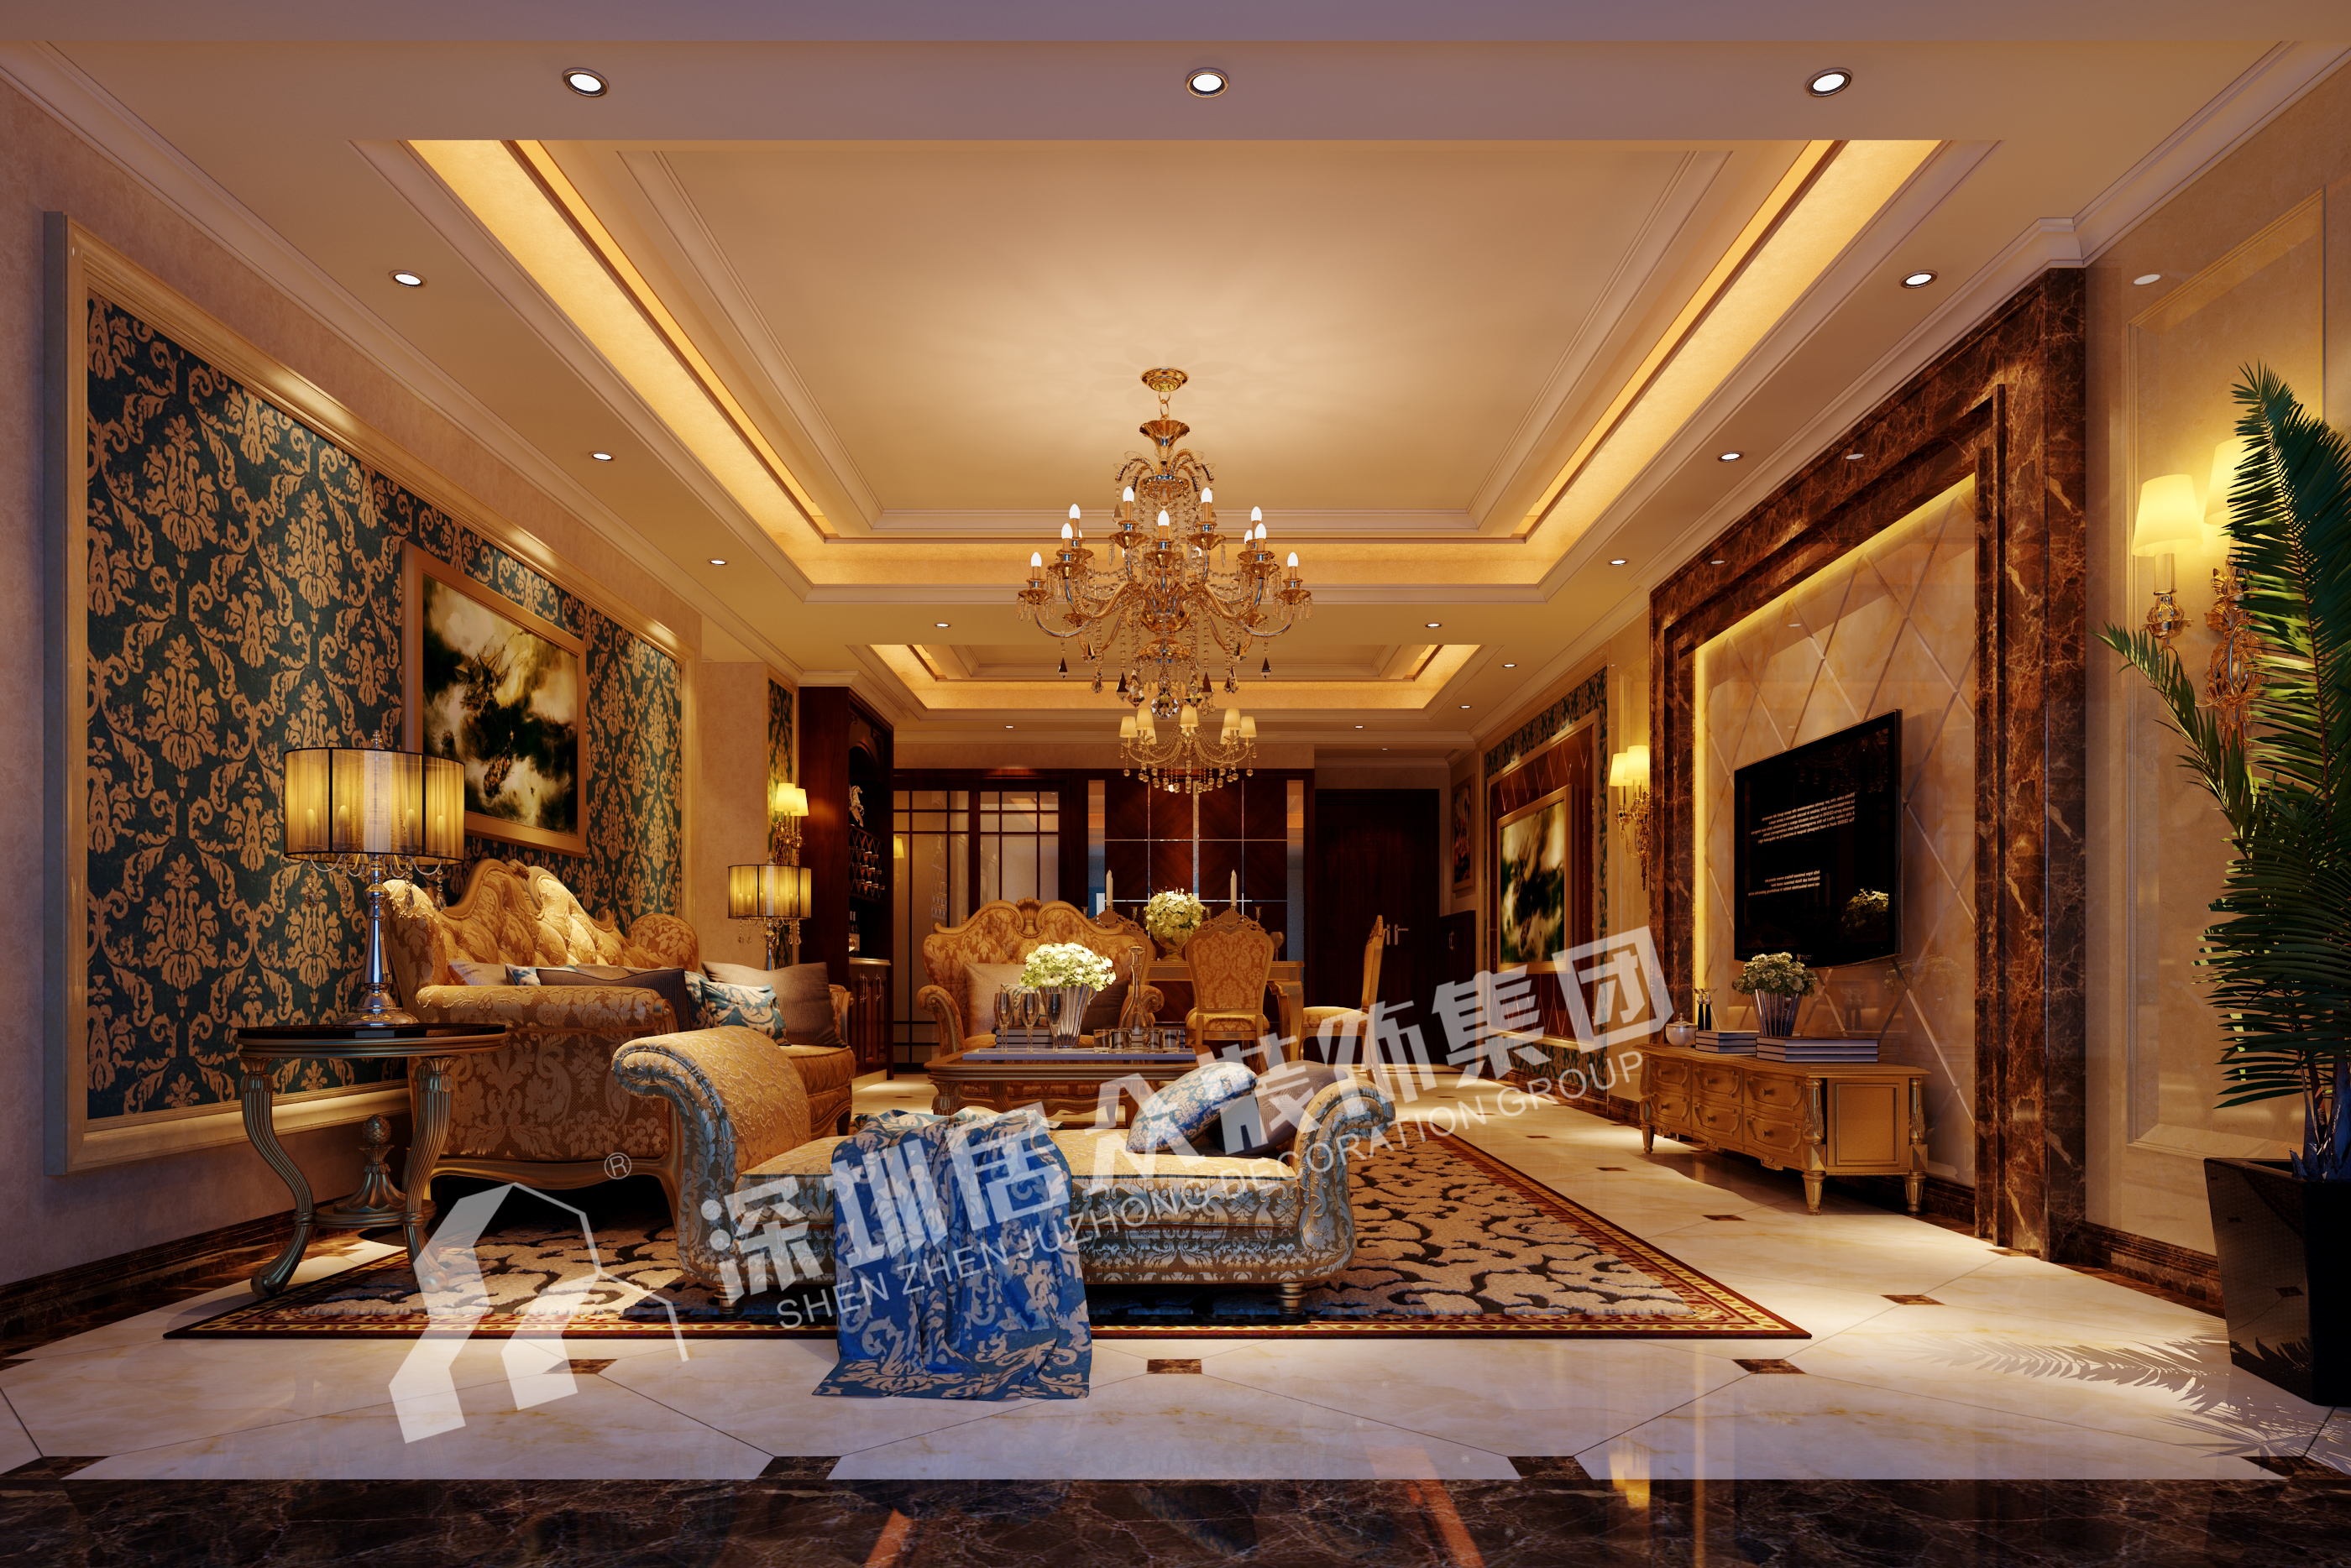 欧式 小资 白领 客厅图片来自半城烟沙5949758236在国际社区江御——欧式风格的分享